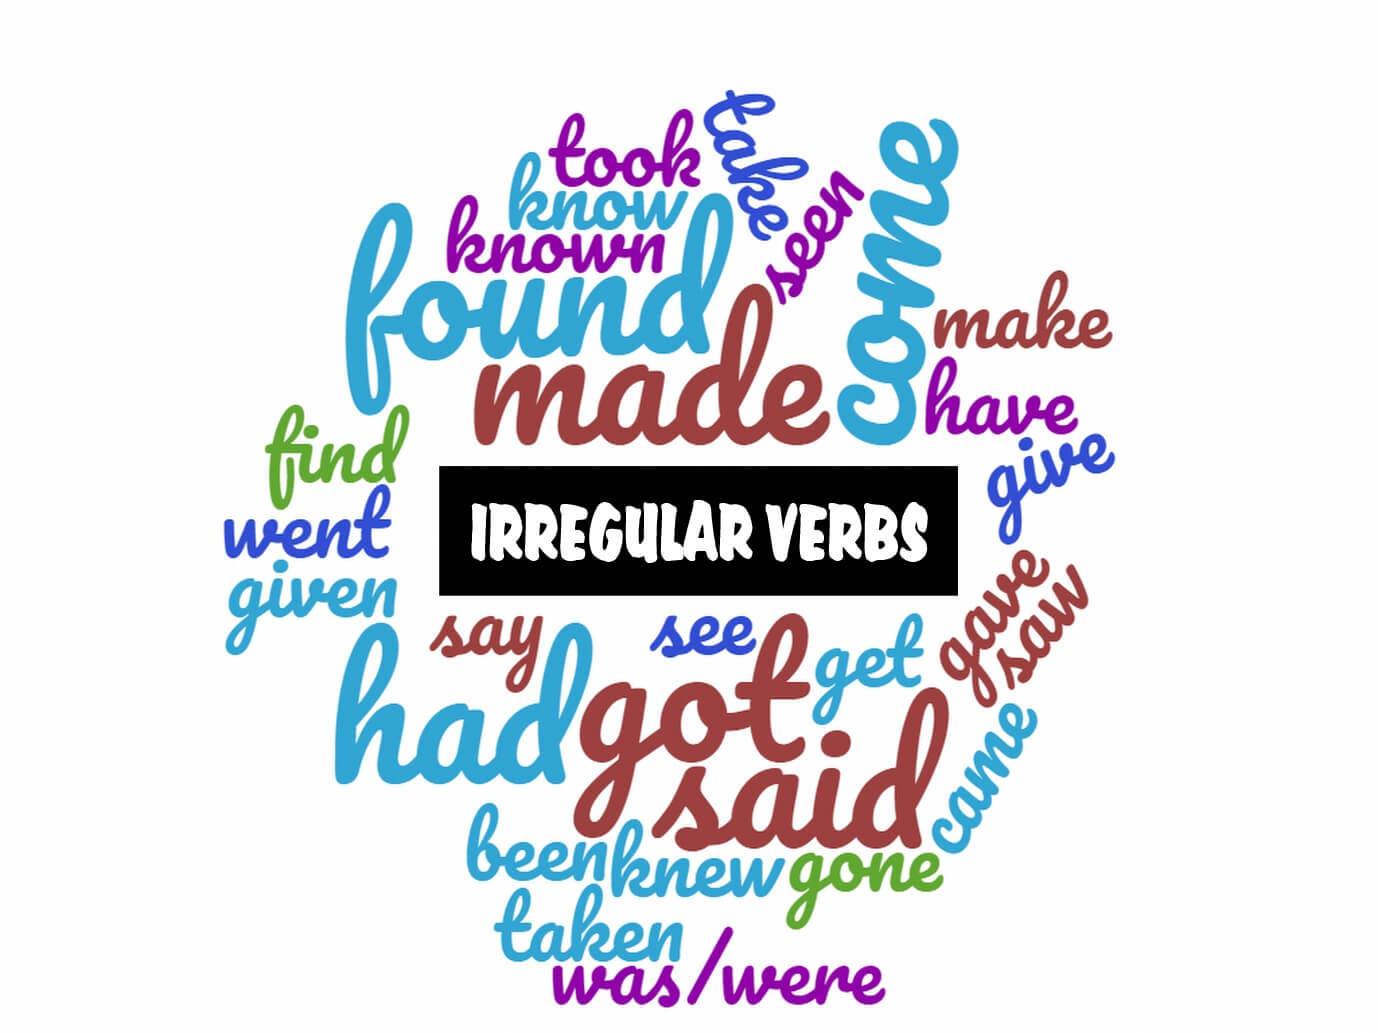 Irregular verbs part 1